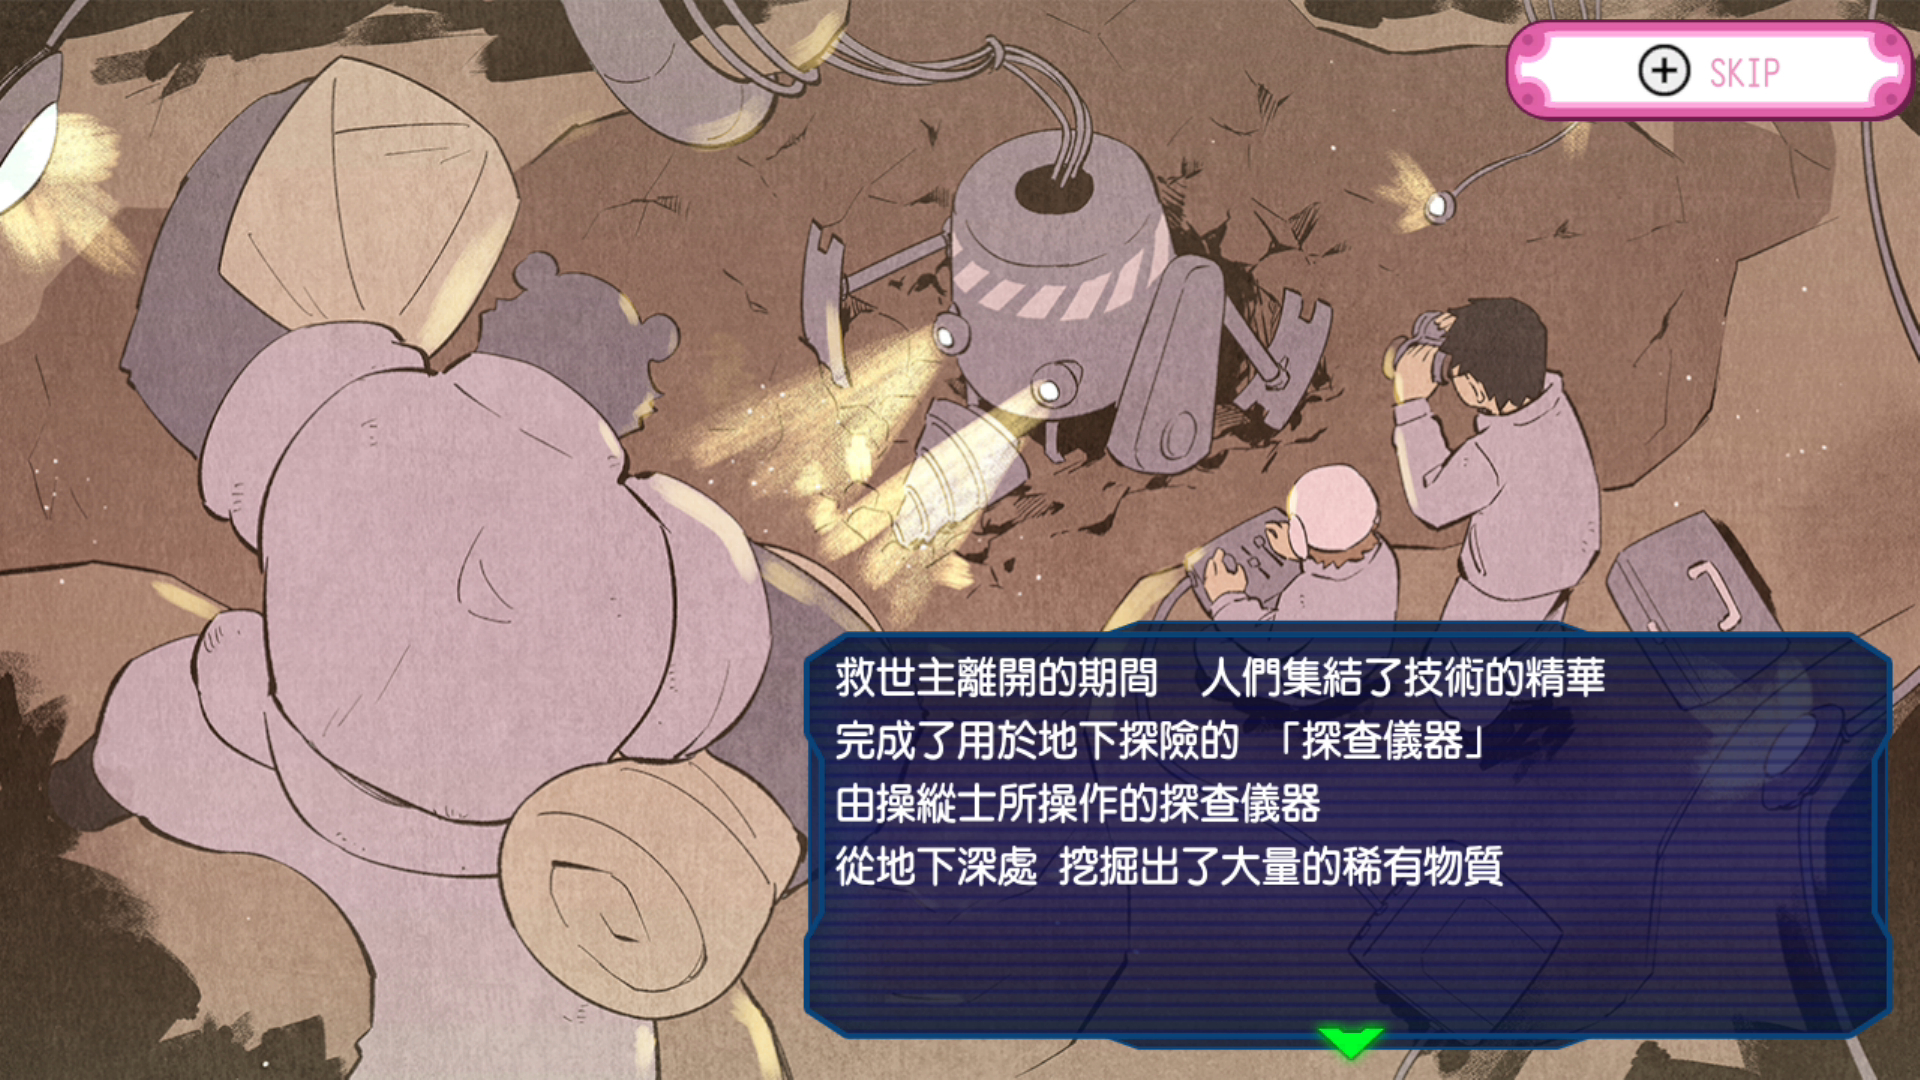 新感觉 Rougelike 挖掘战略游戏《地下潜者》中文版 6 月 30 日上市